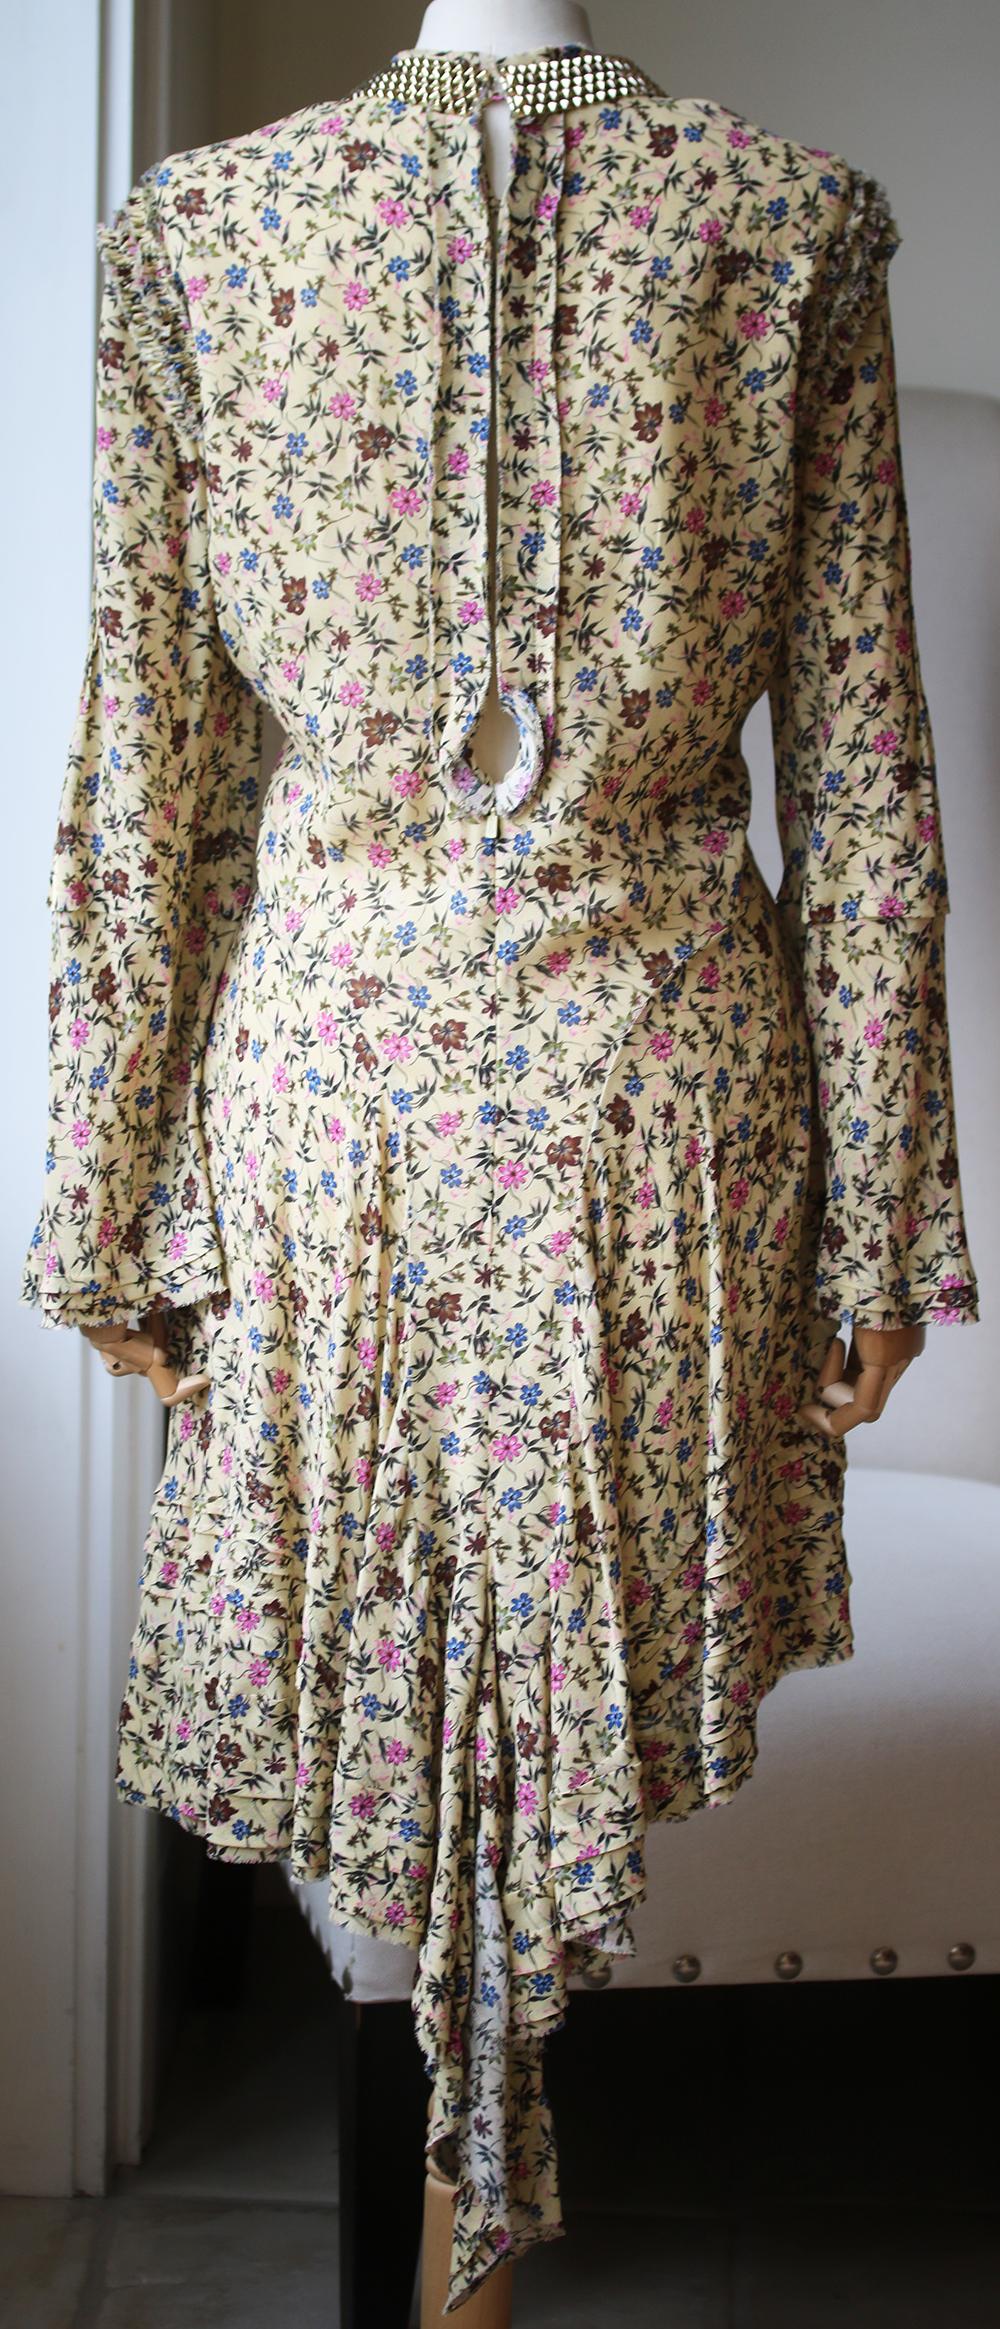 ruffled floral print mini dress